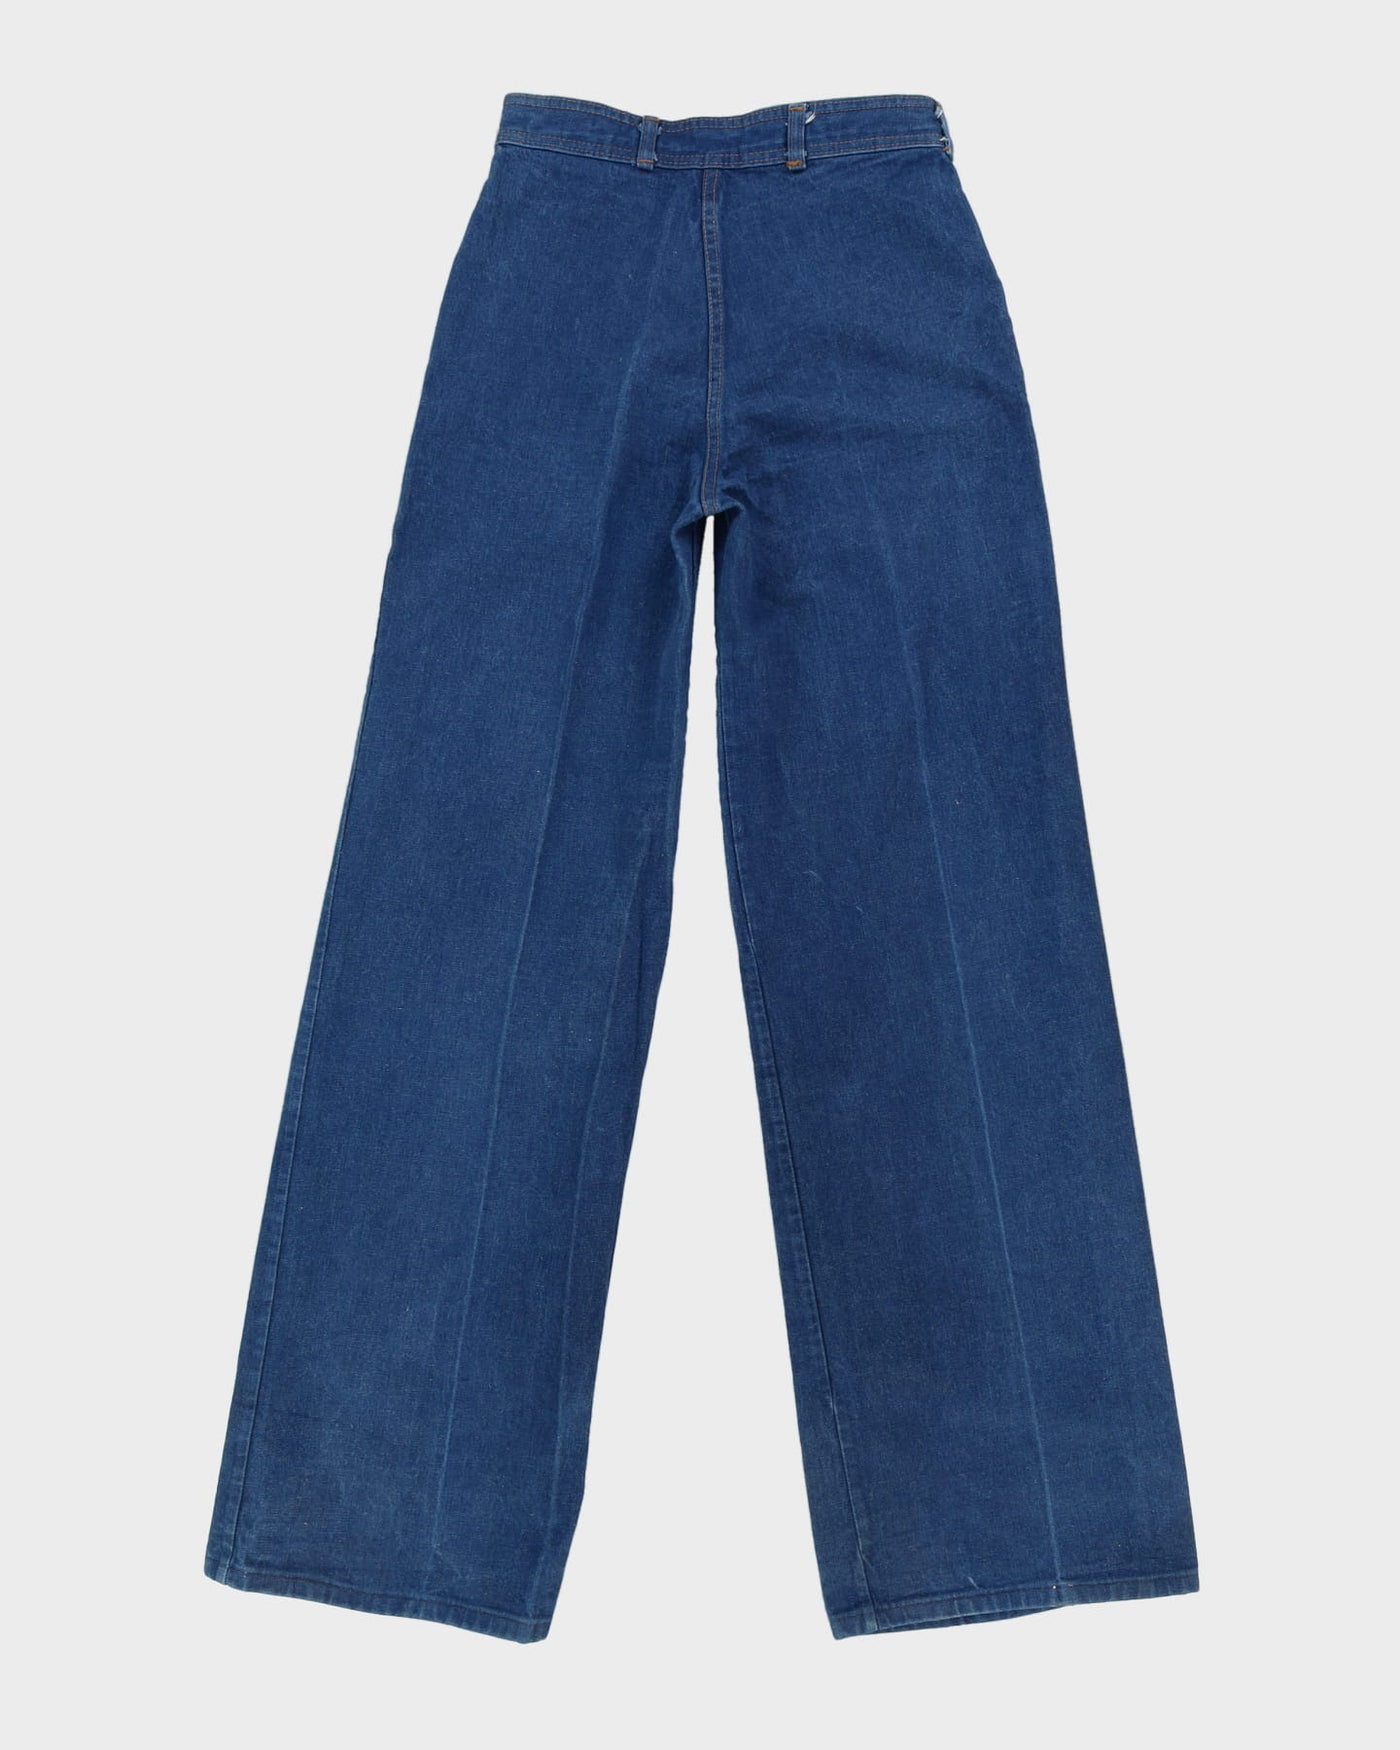 Vintage 1970s Blue Denim Flared Jeans - W28 L36